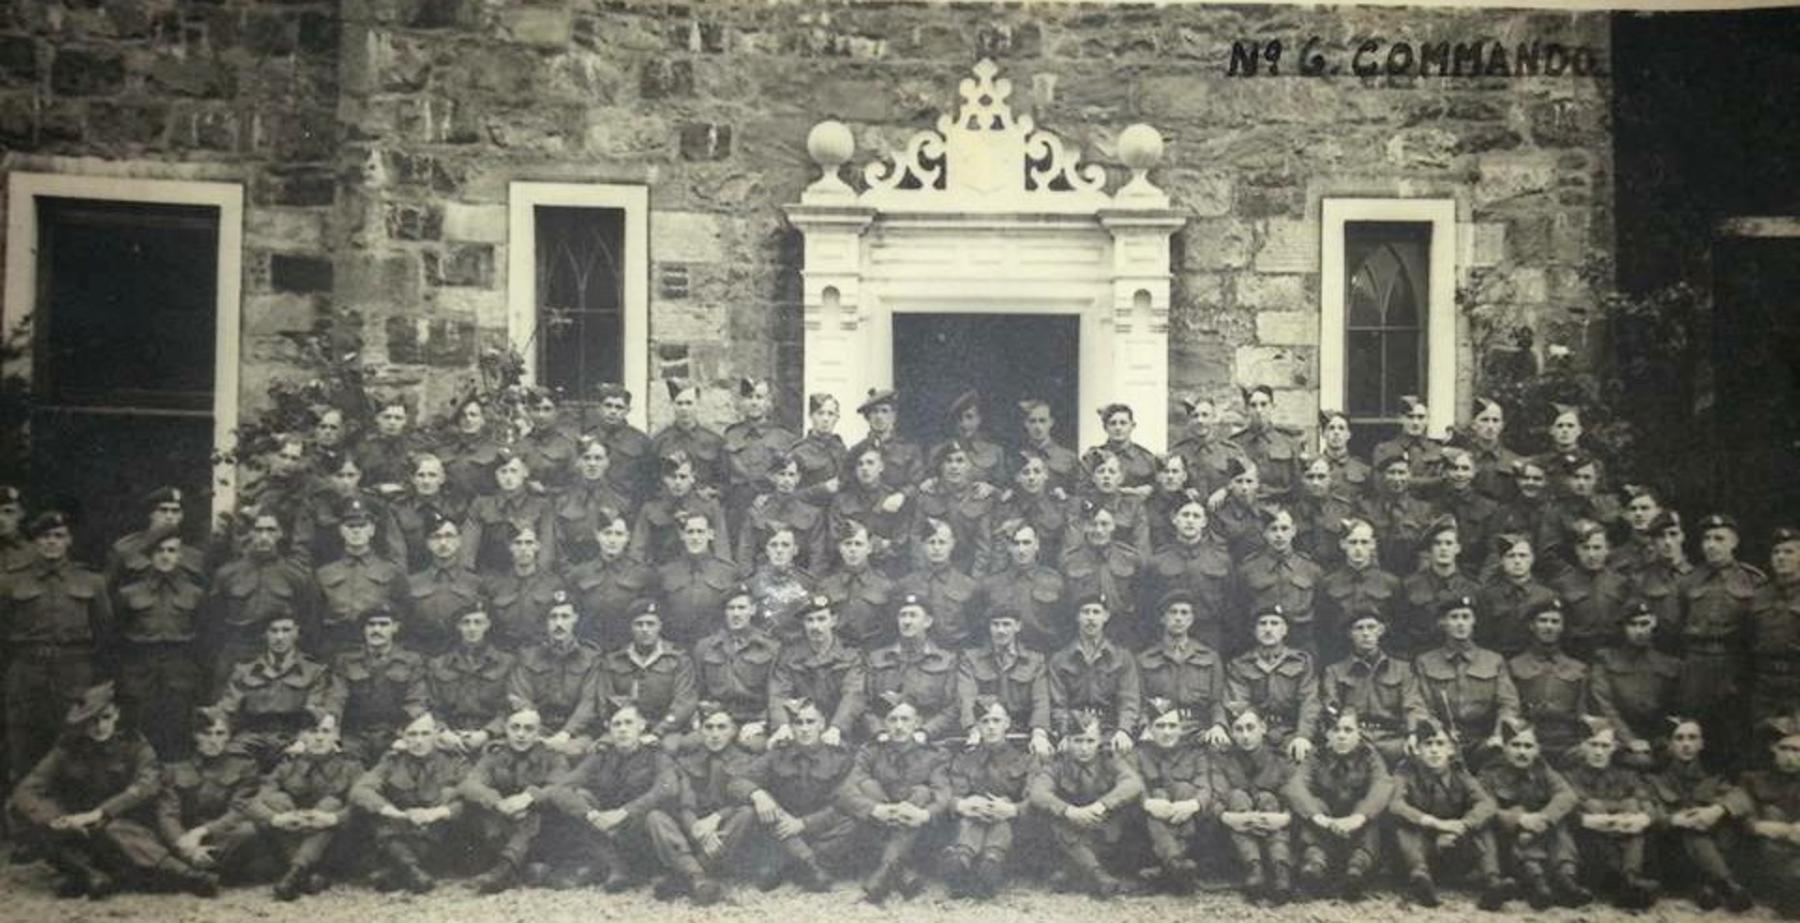 No.6 Commando at Achnacarry